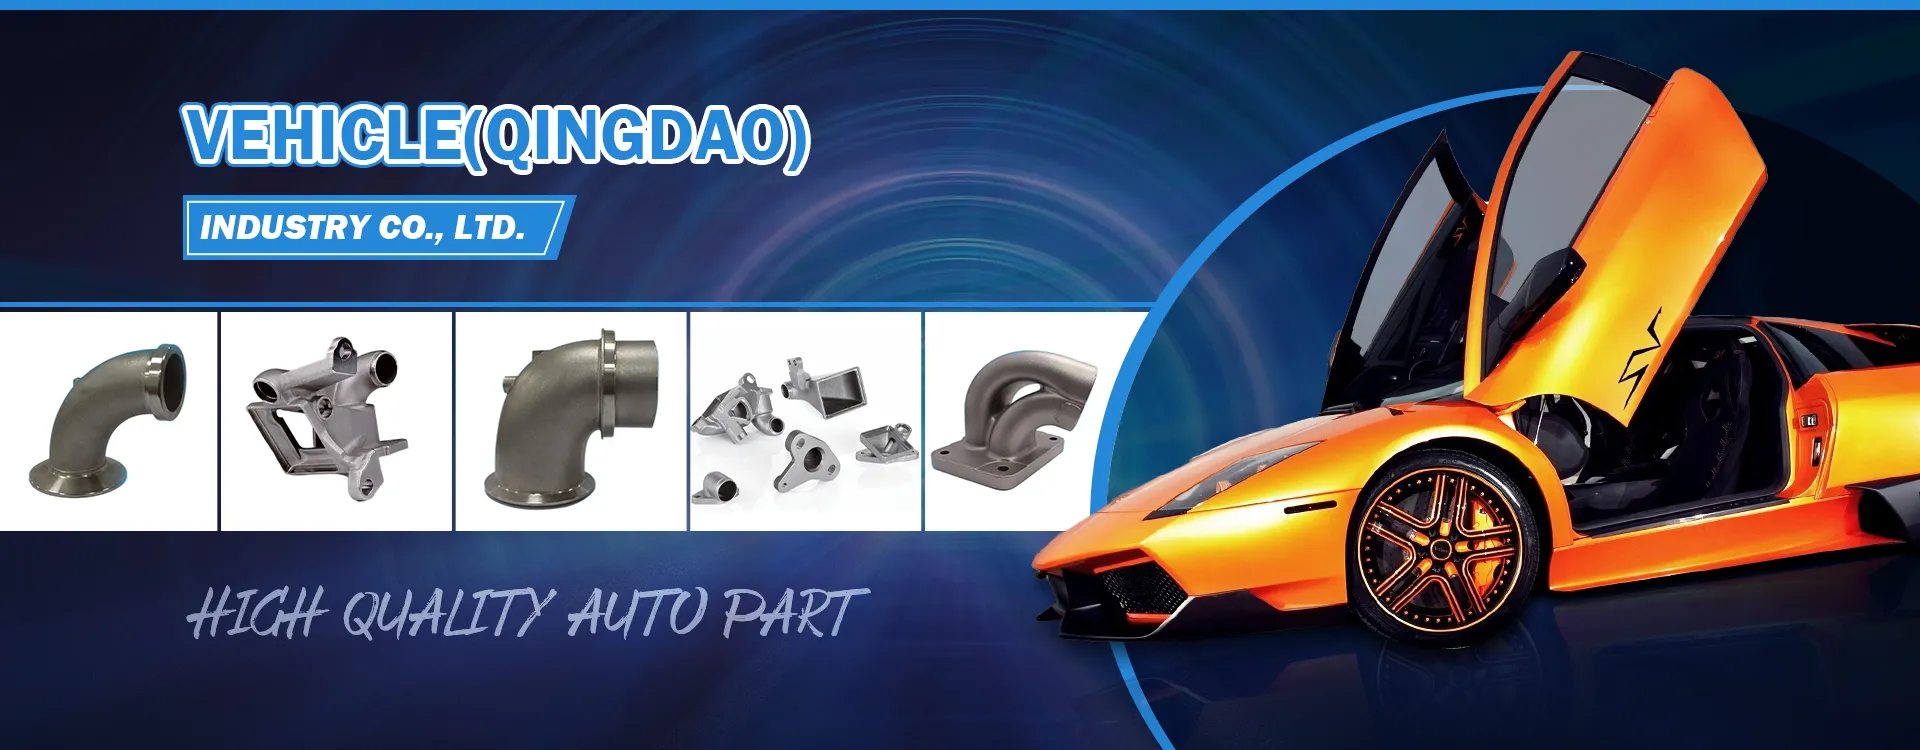 Vehicle (Qingdao) Industry Co., Ltd.